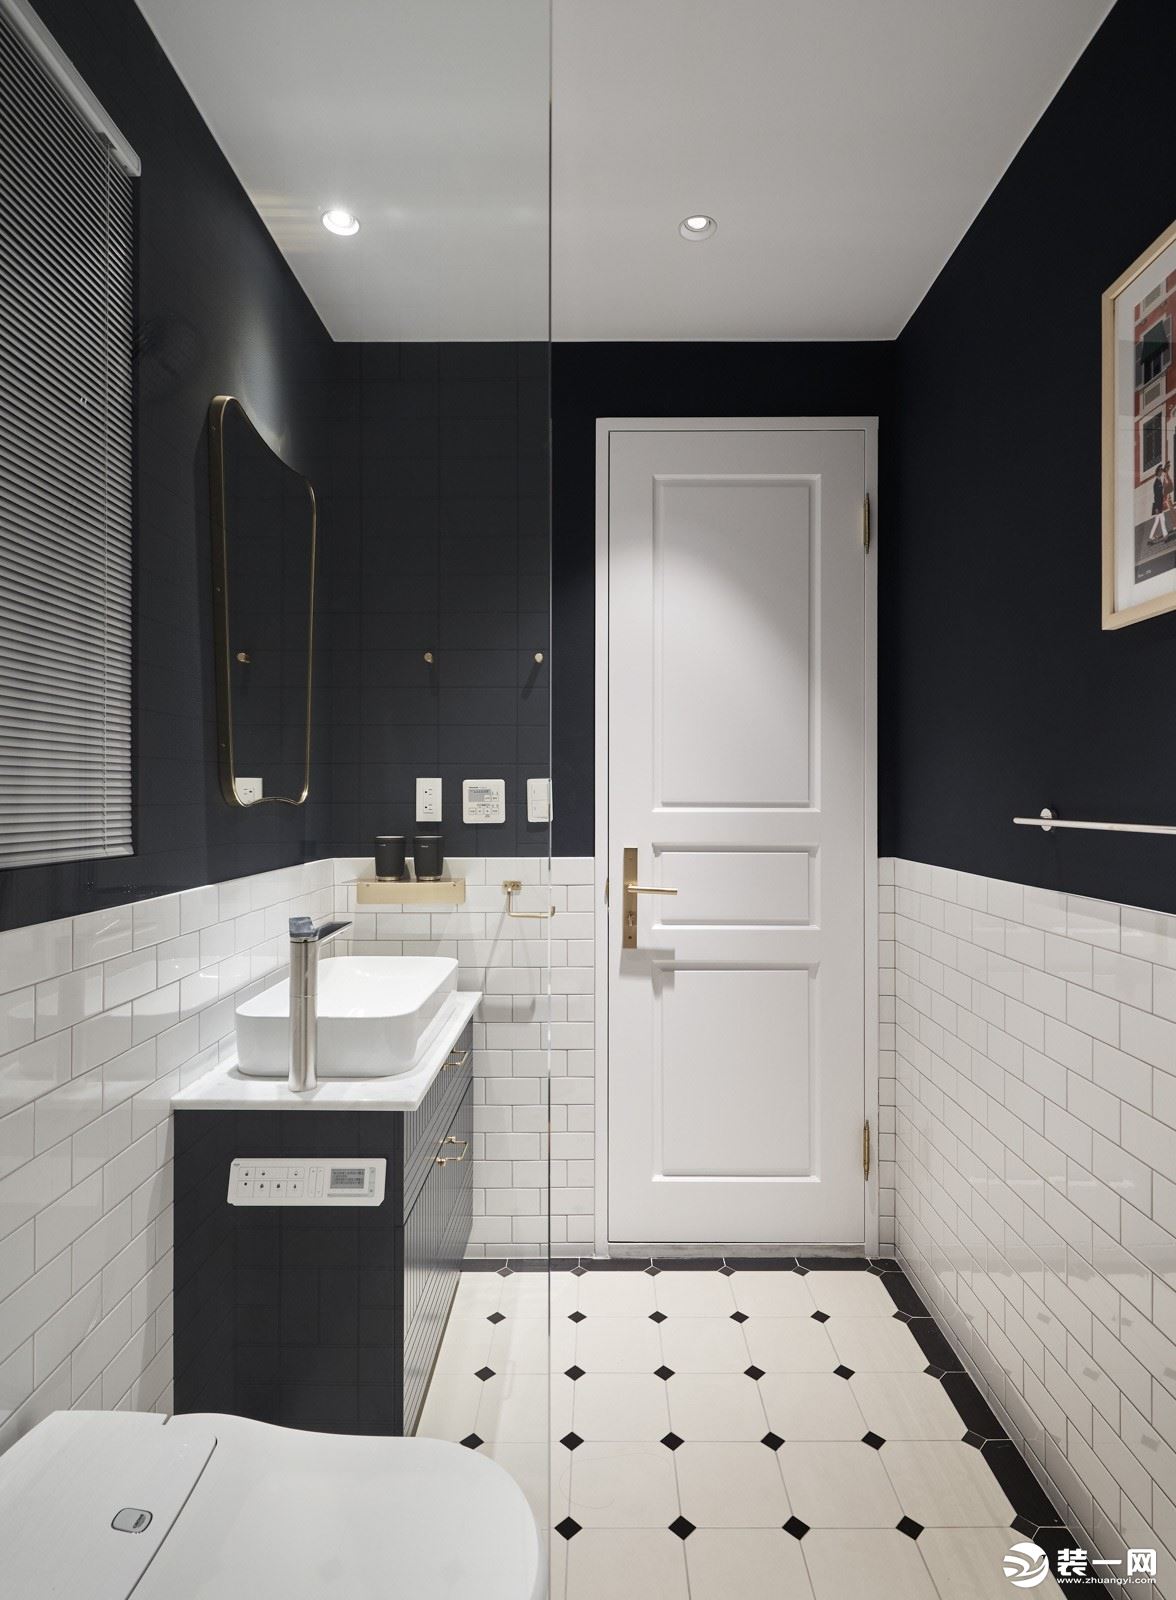 卫生间：黑白的小方砖充满了北欧色彩，特意选的黑色淋浴花洒很好的形成对比，黑白空间里透出凉爽清透感。